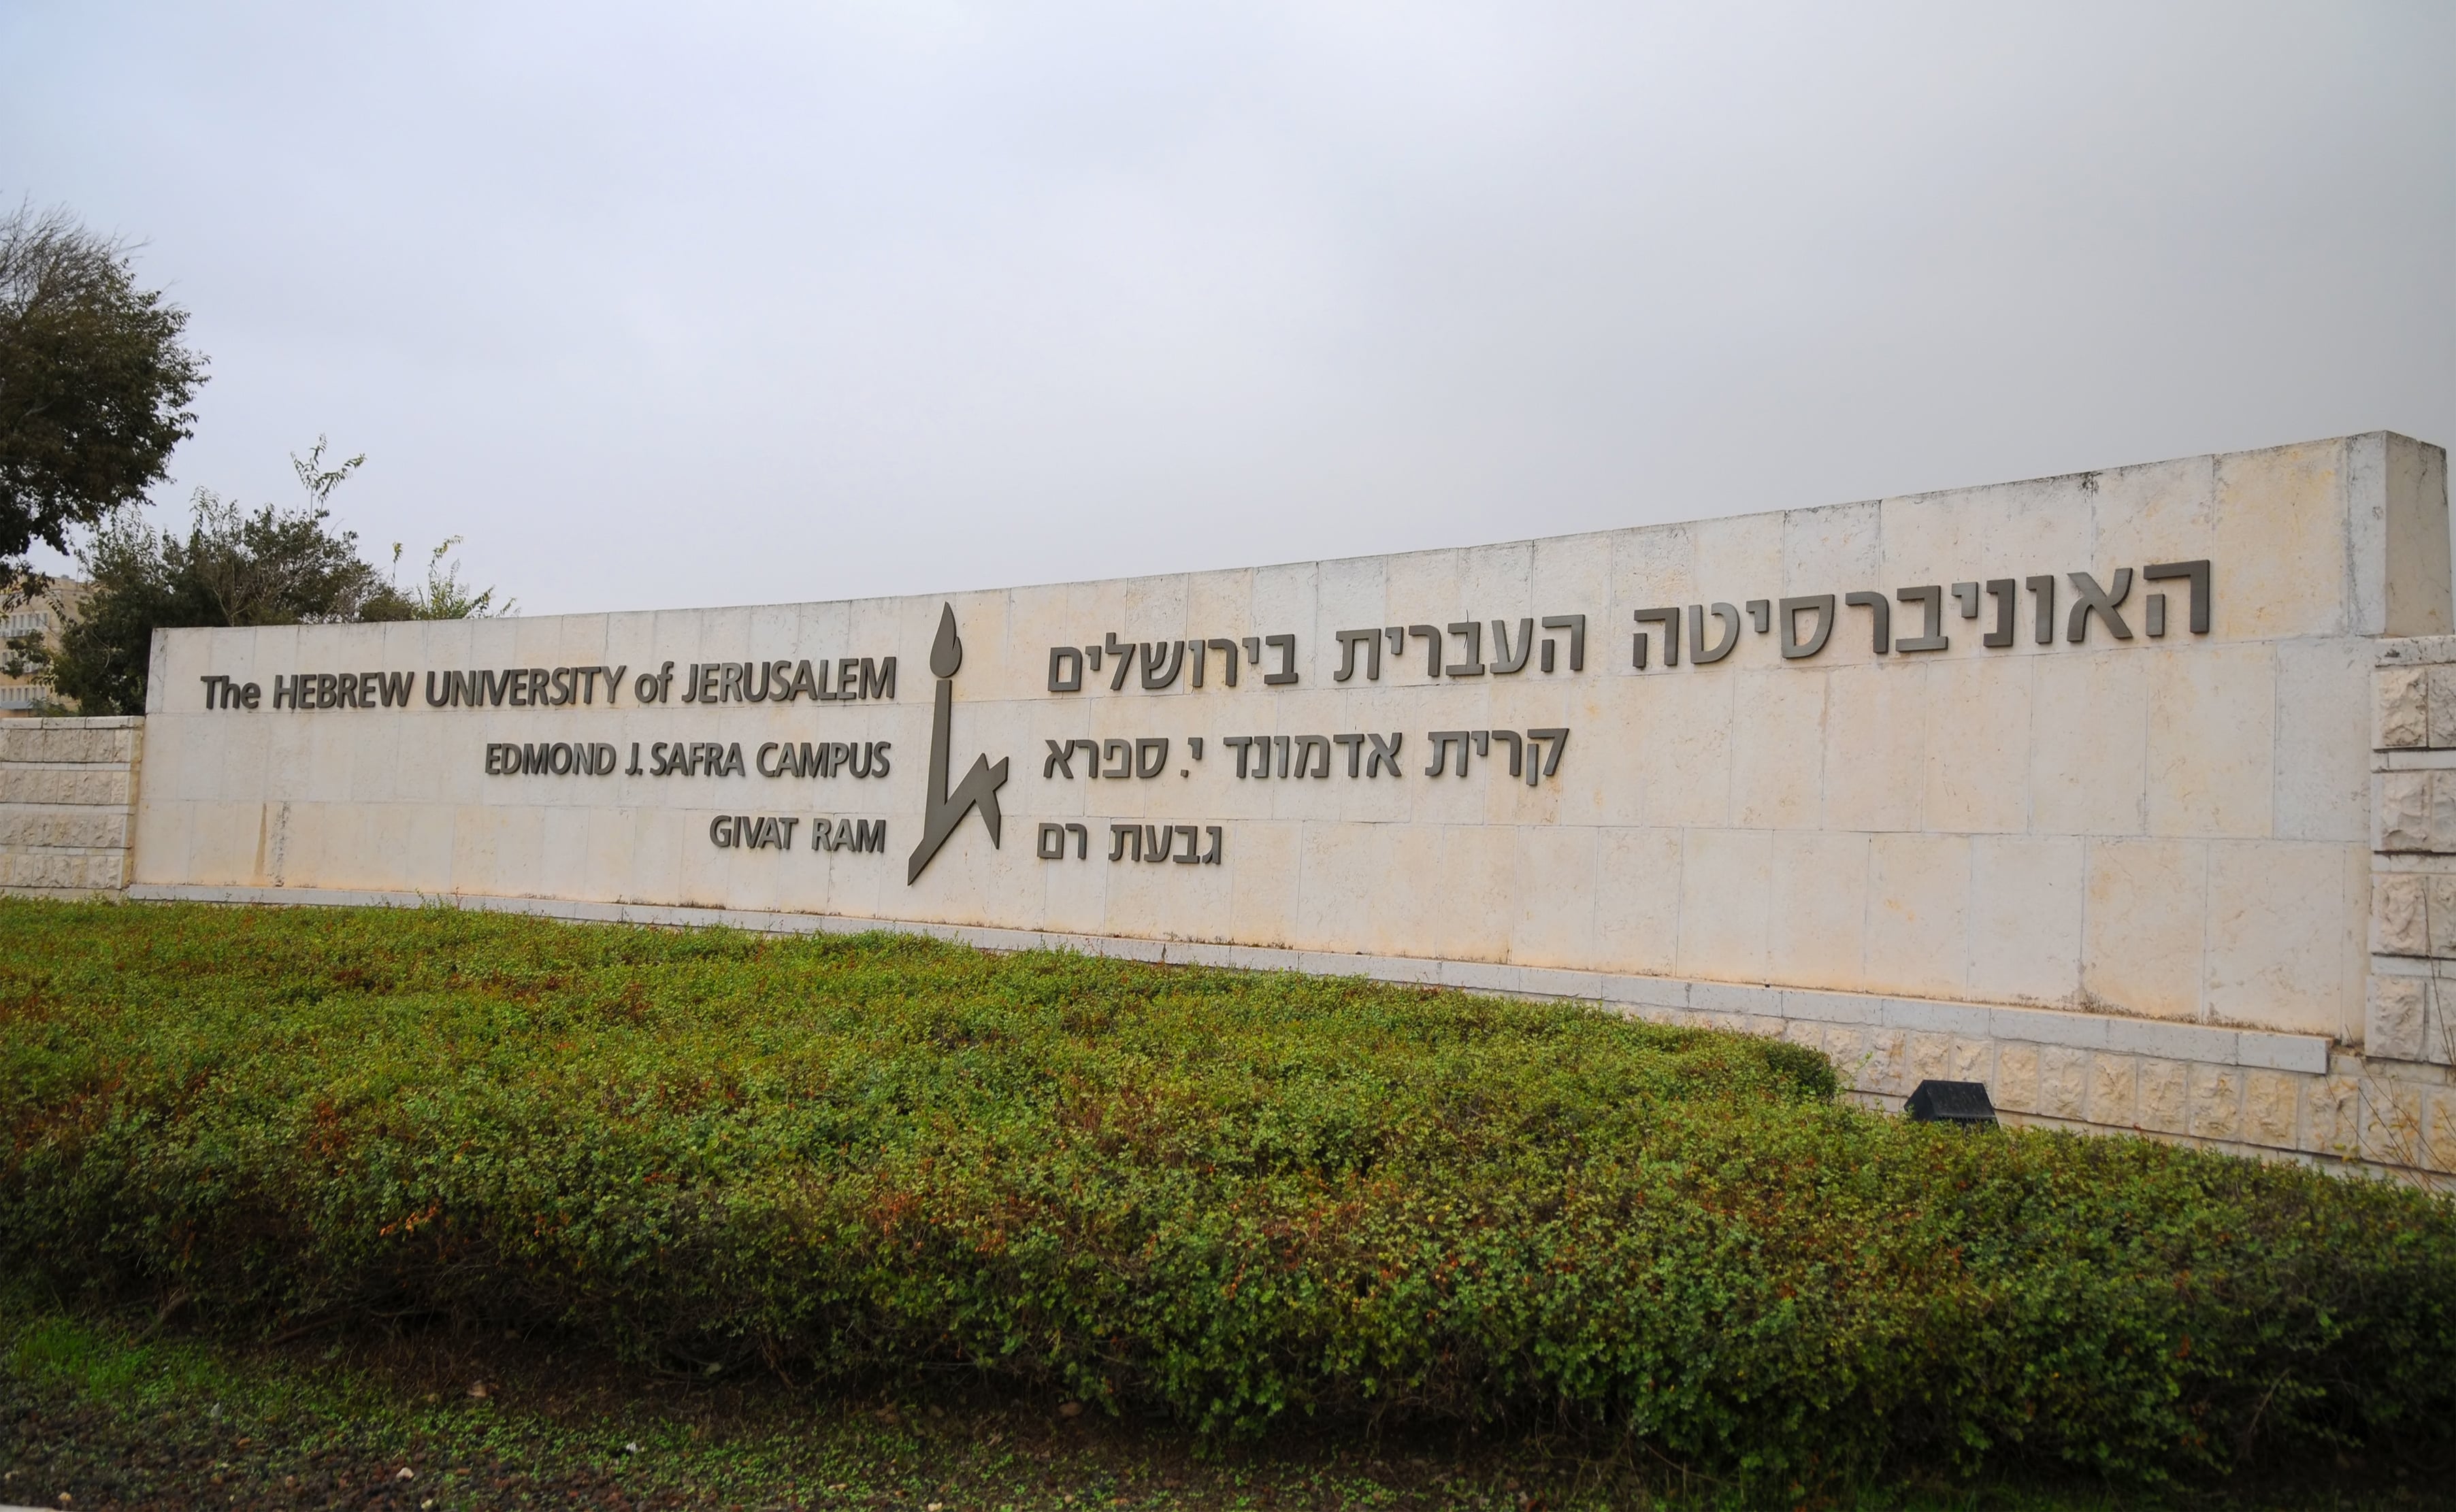 האוניברסיטה העברית - מסרה ידיעה כוזבת בבחינה ולא תורחק מהלימודים